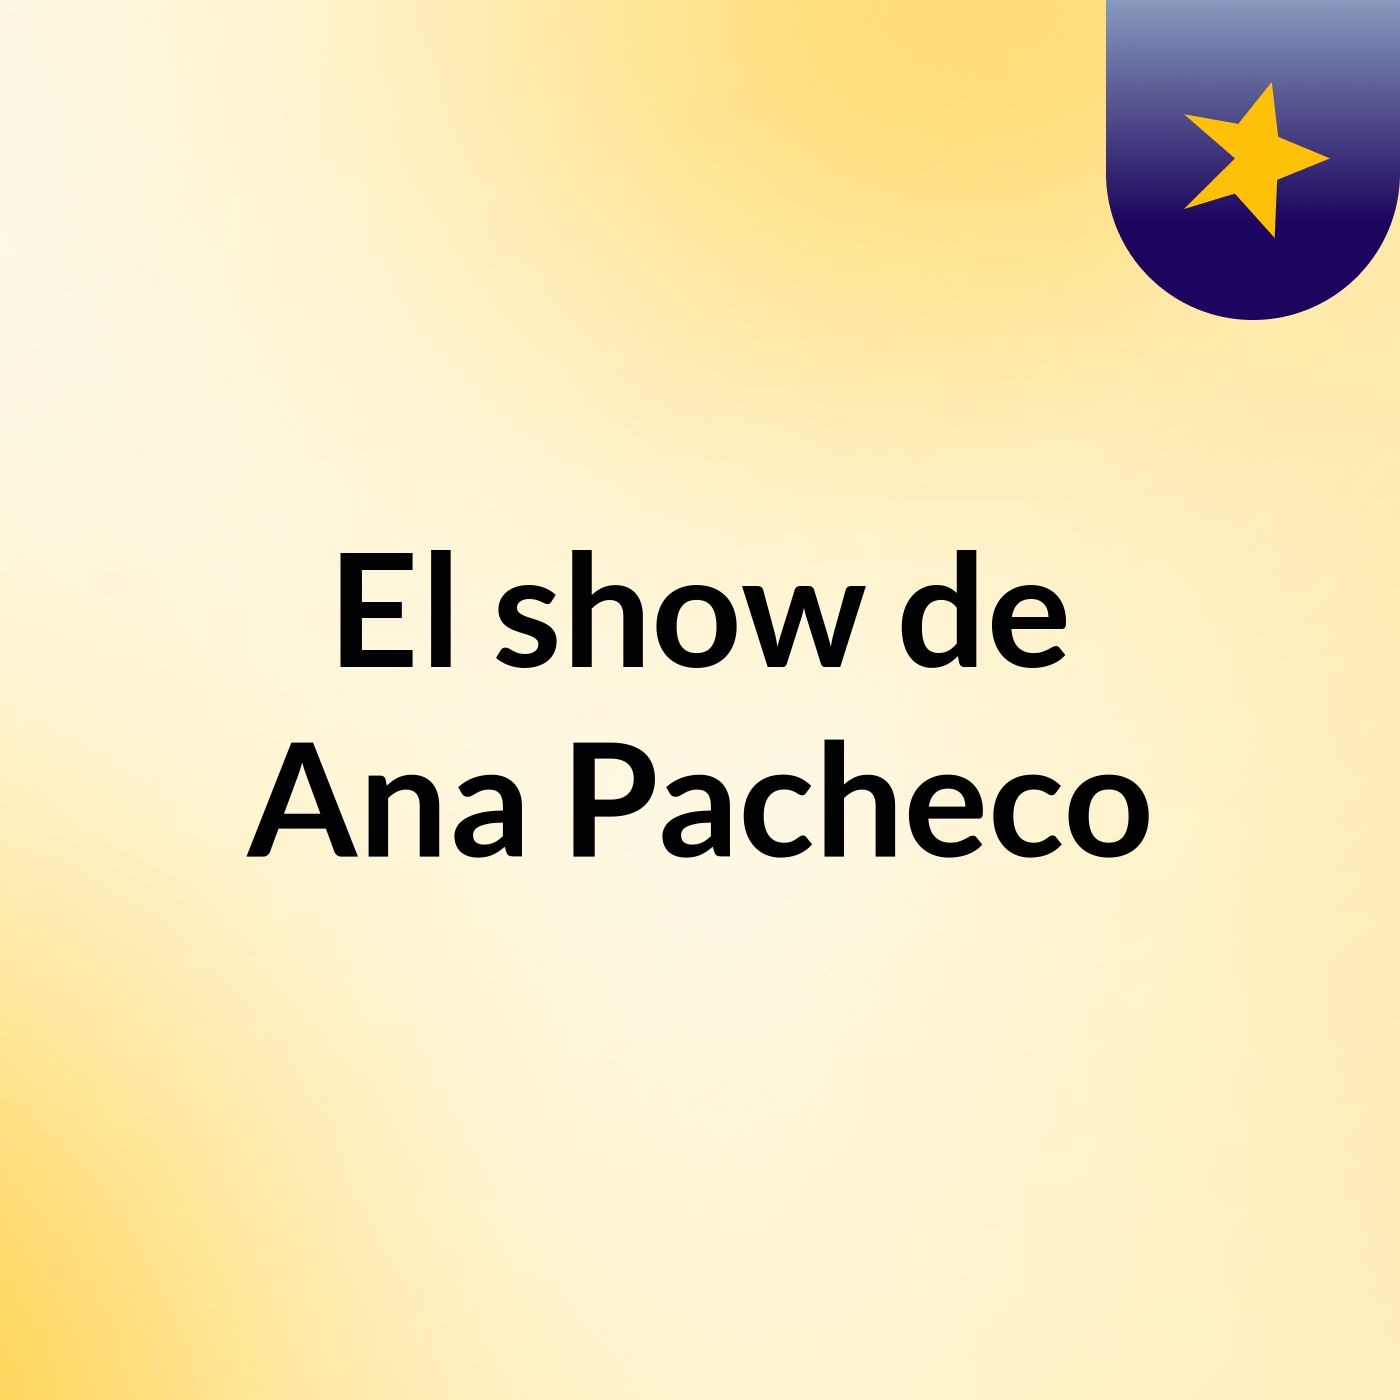 El show de Ana Pacheco